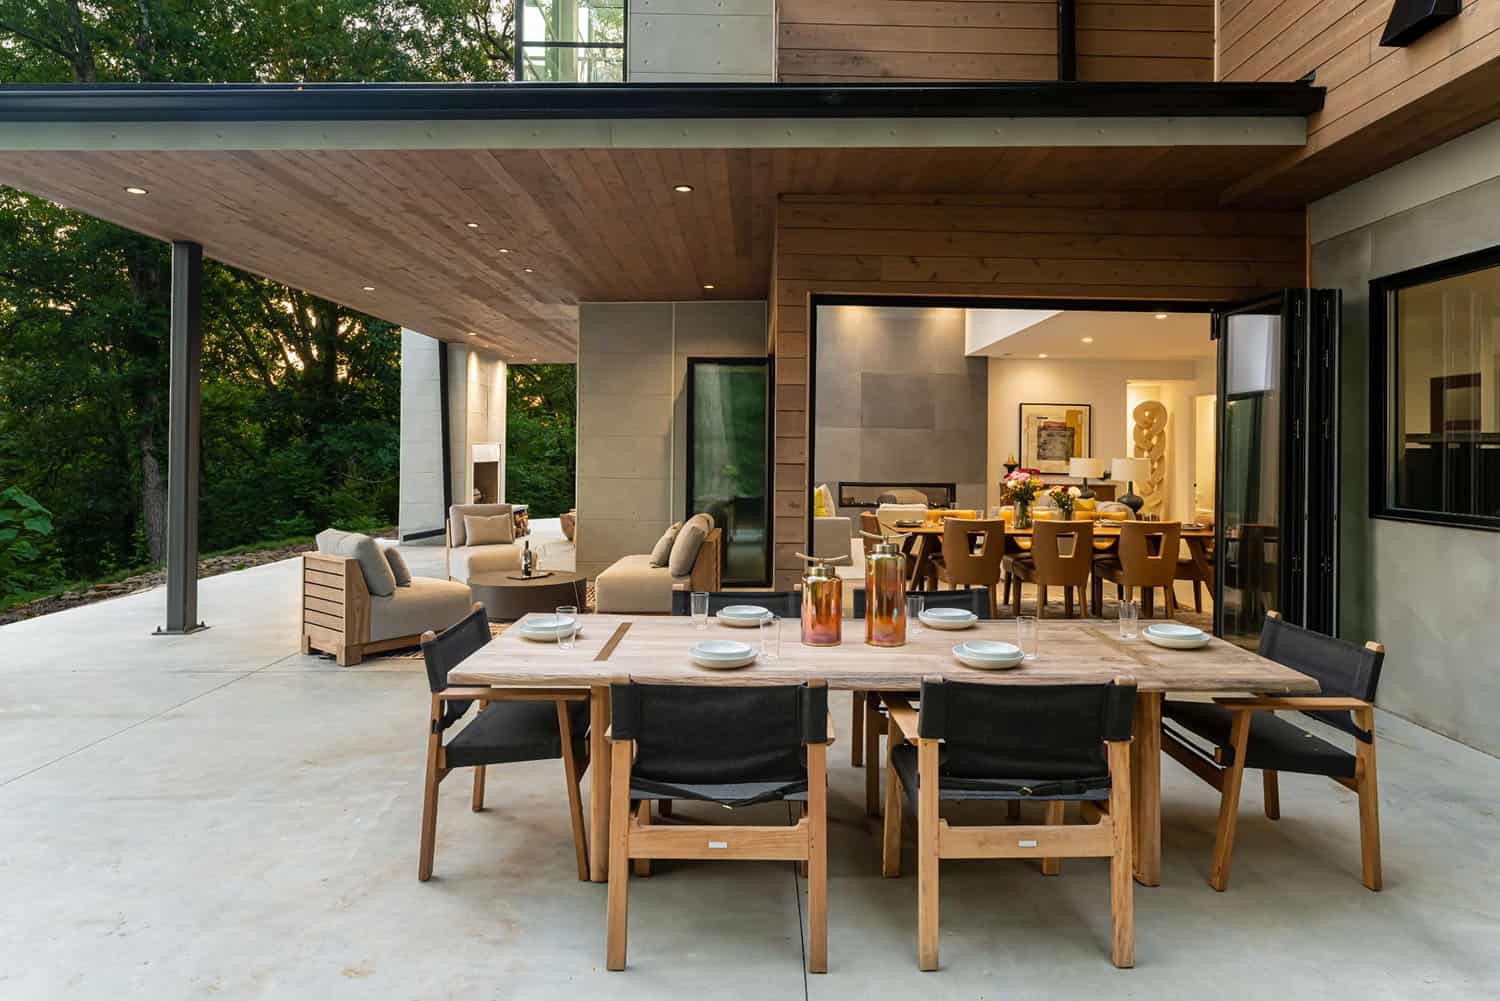 mountain-modern-home-patio